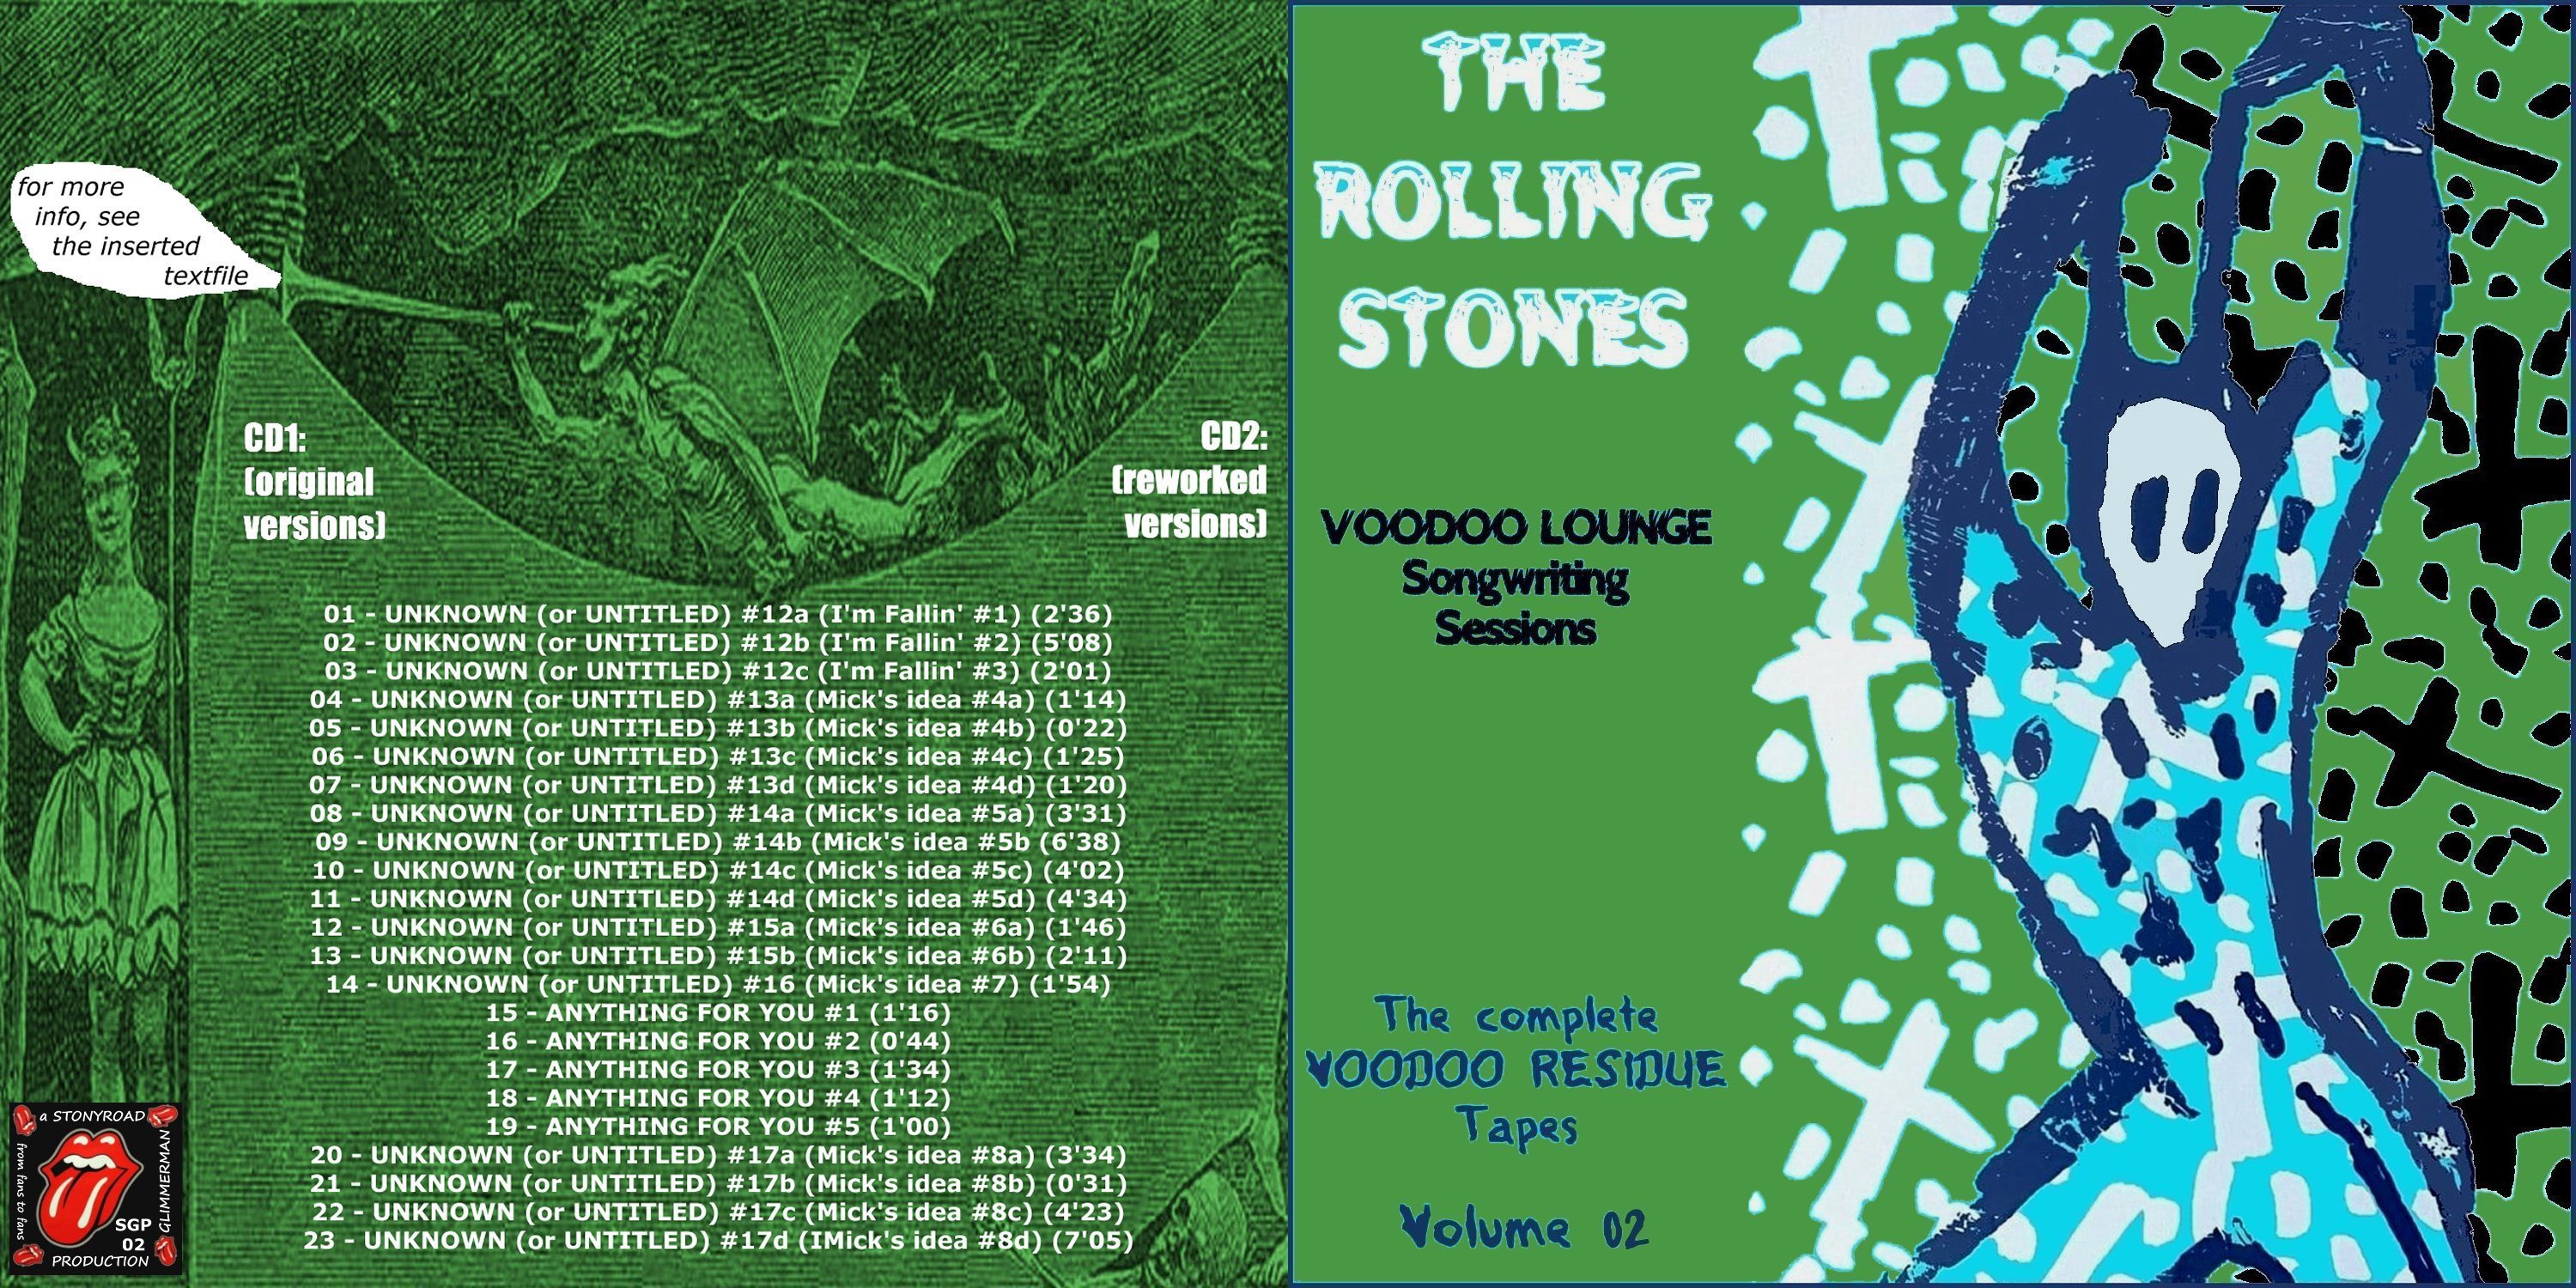 RollingStones1993-05-20Vol02VoodoLoungeSongwritingSessions (1).jpg